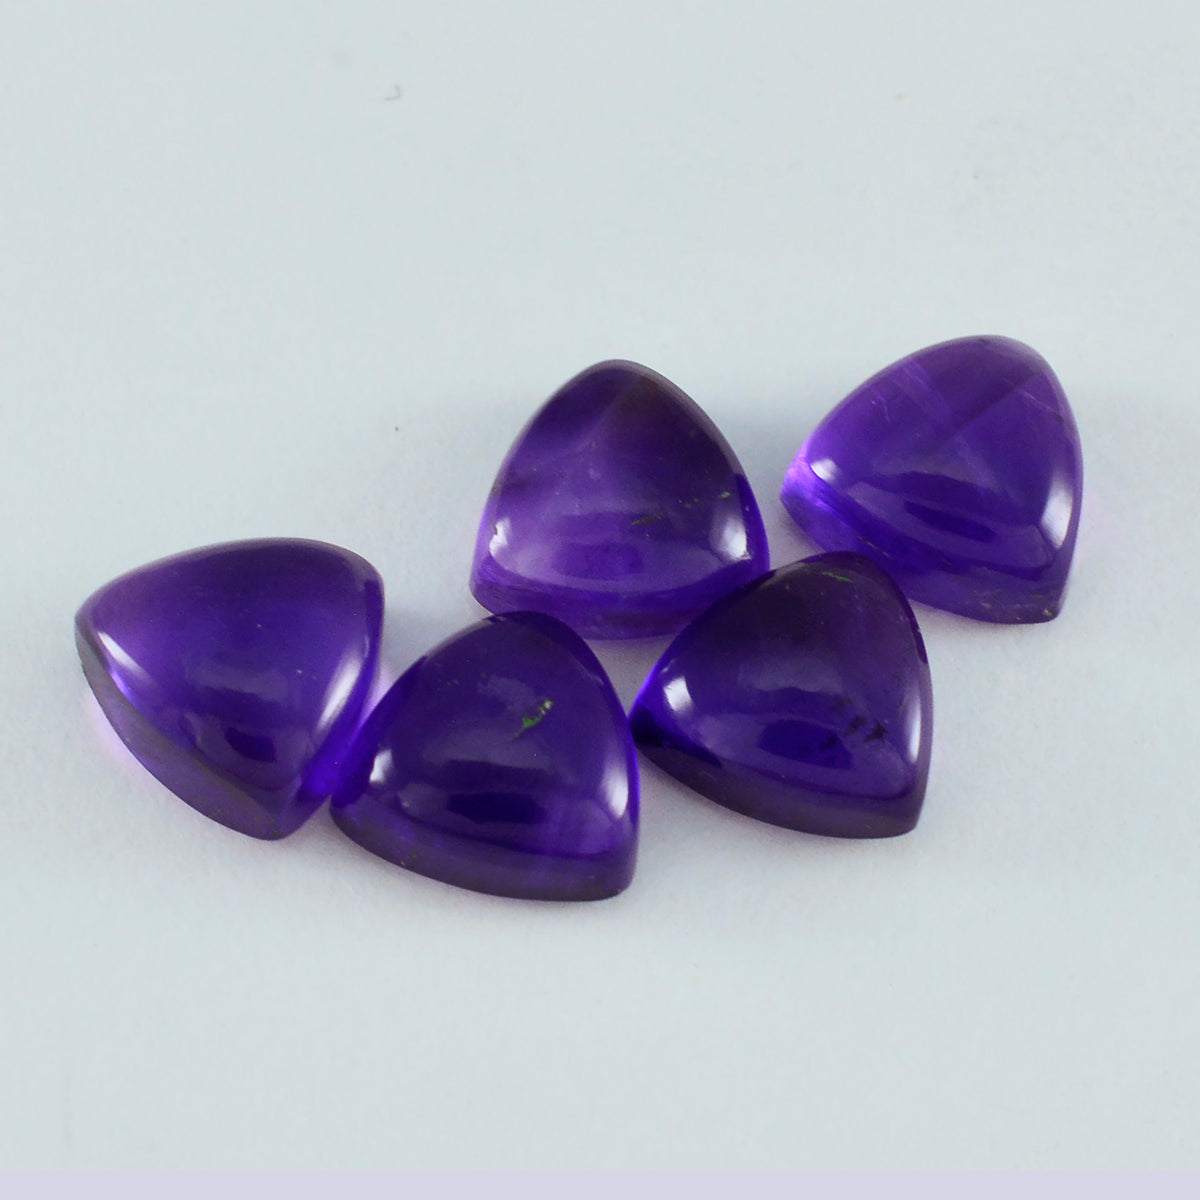 Riyogems 1 pieza cabujón de amatista púrpura 11x11mm forma de trillón piedra de calidad impresionante